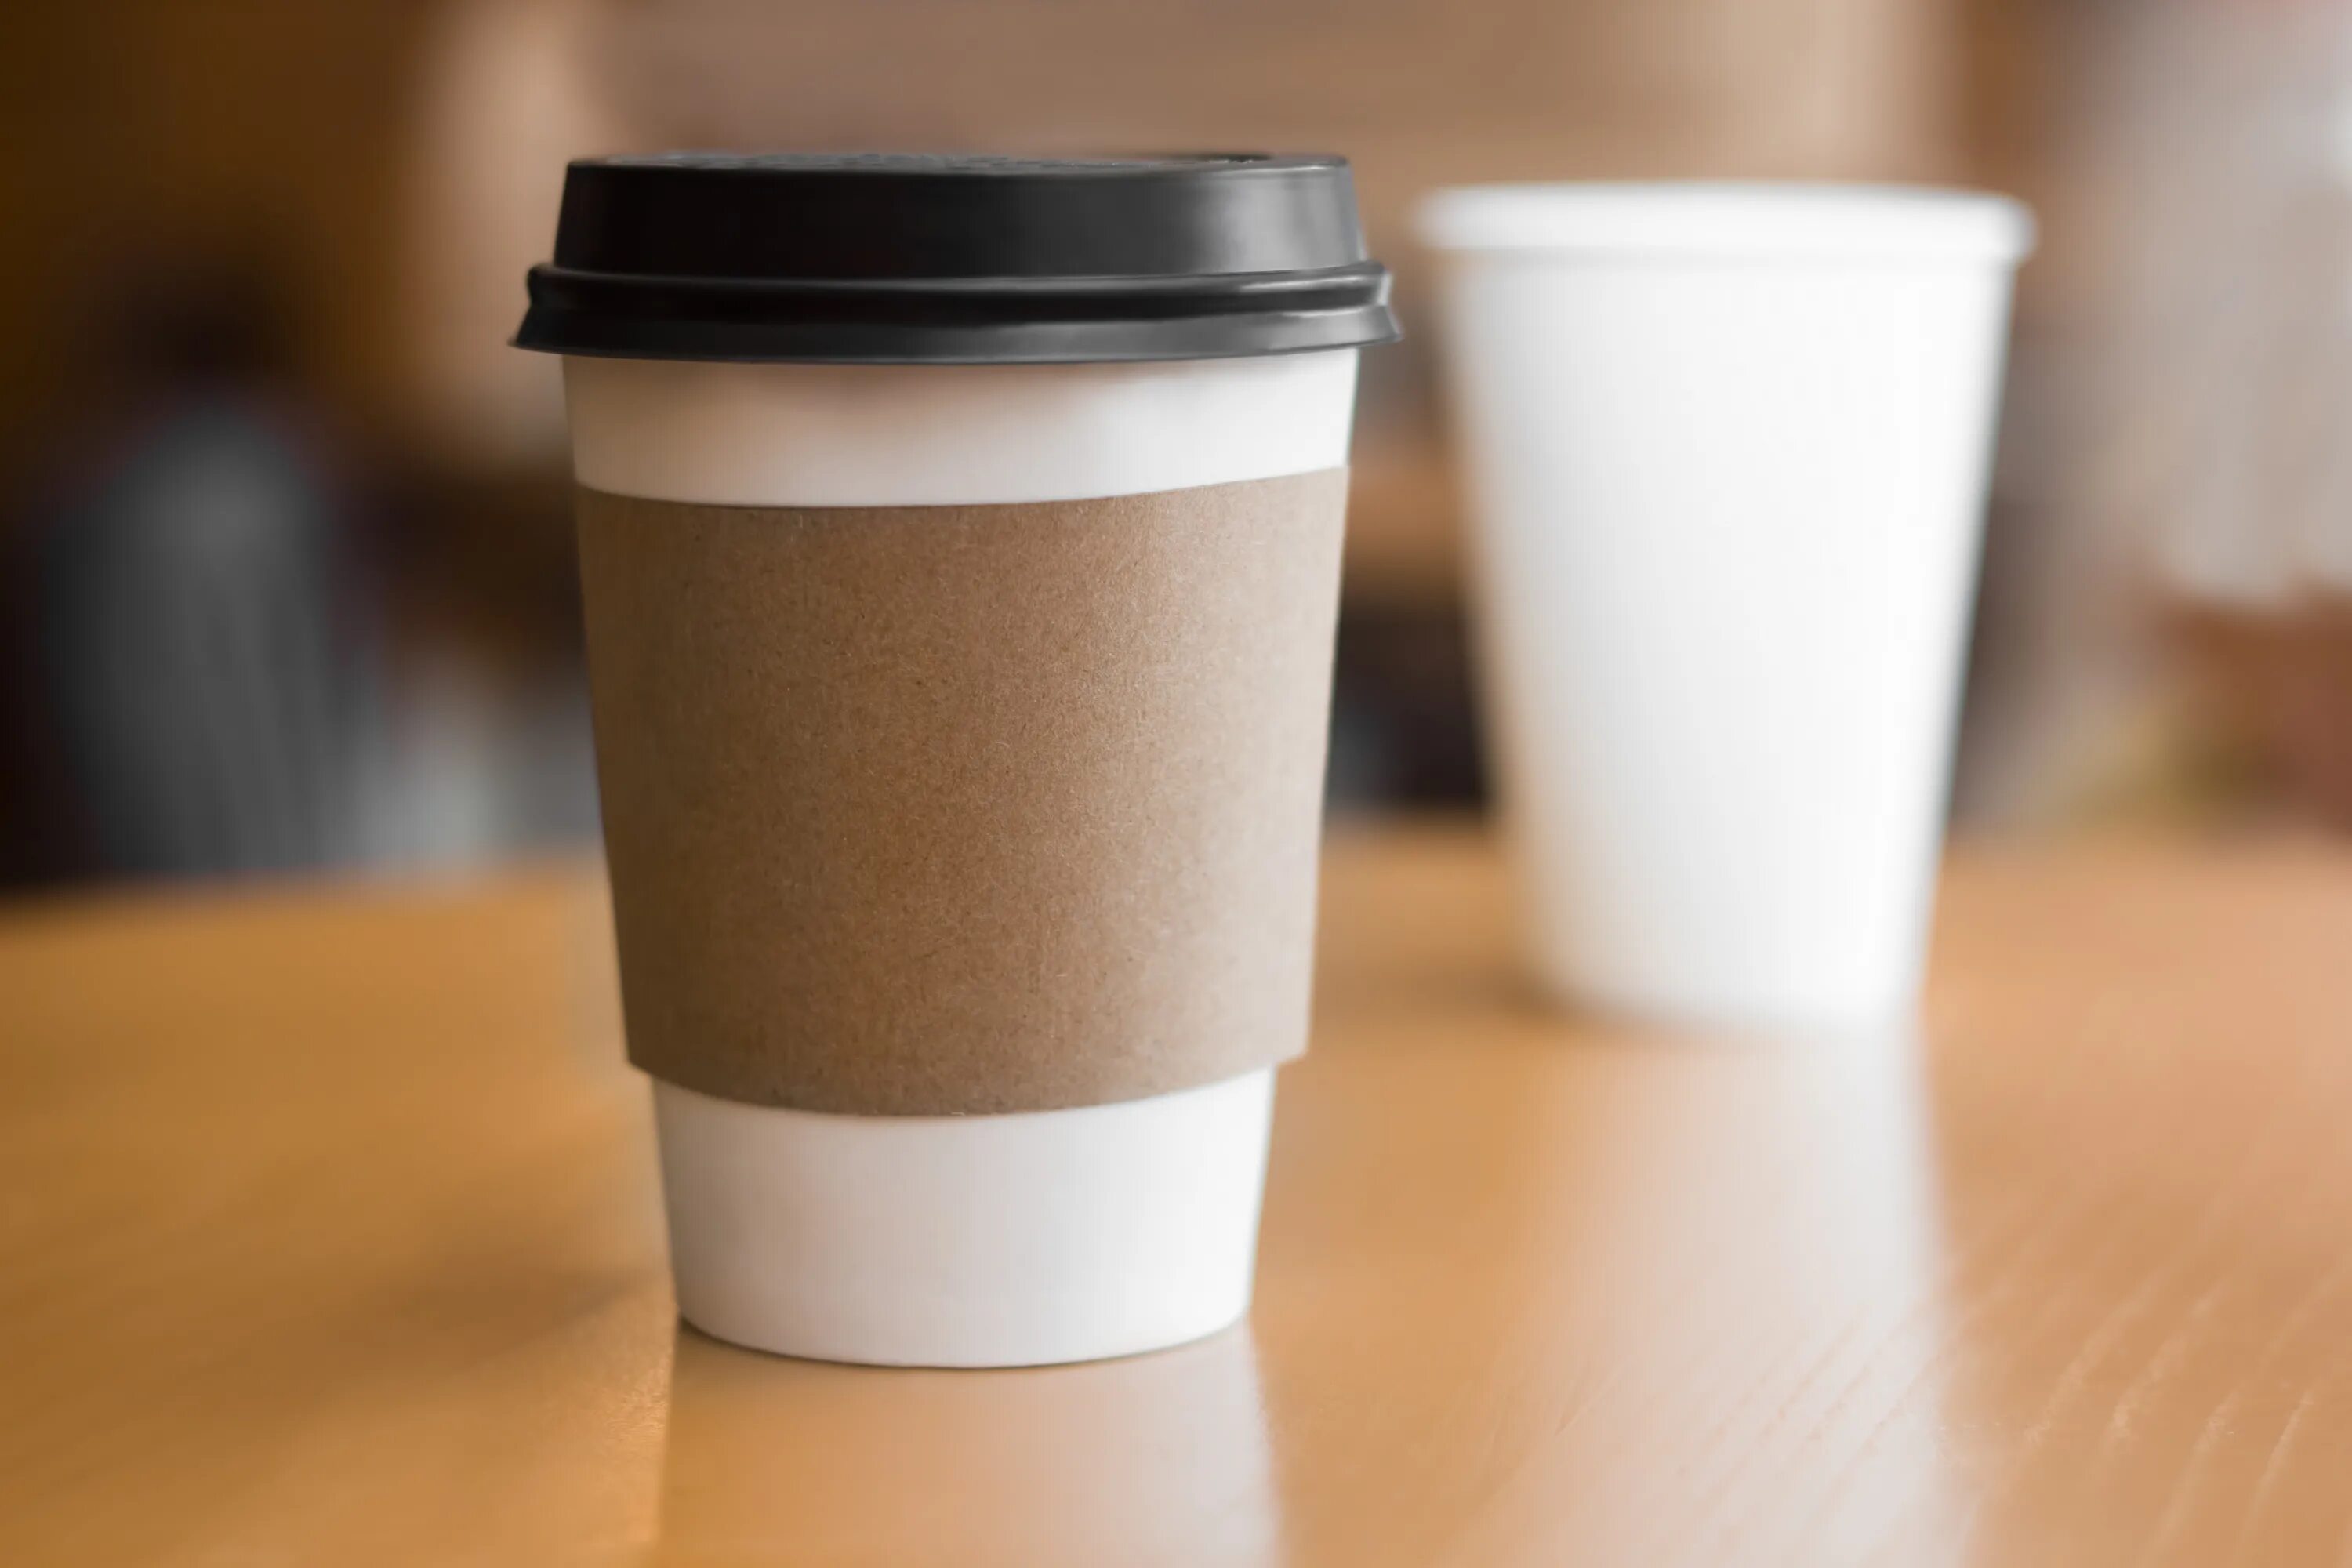 Cups libs. Стакан для кофе. Стаканчик кофе. Пластиковый кофейный стаканчик. Кофе в бумажном стаканчике.